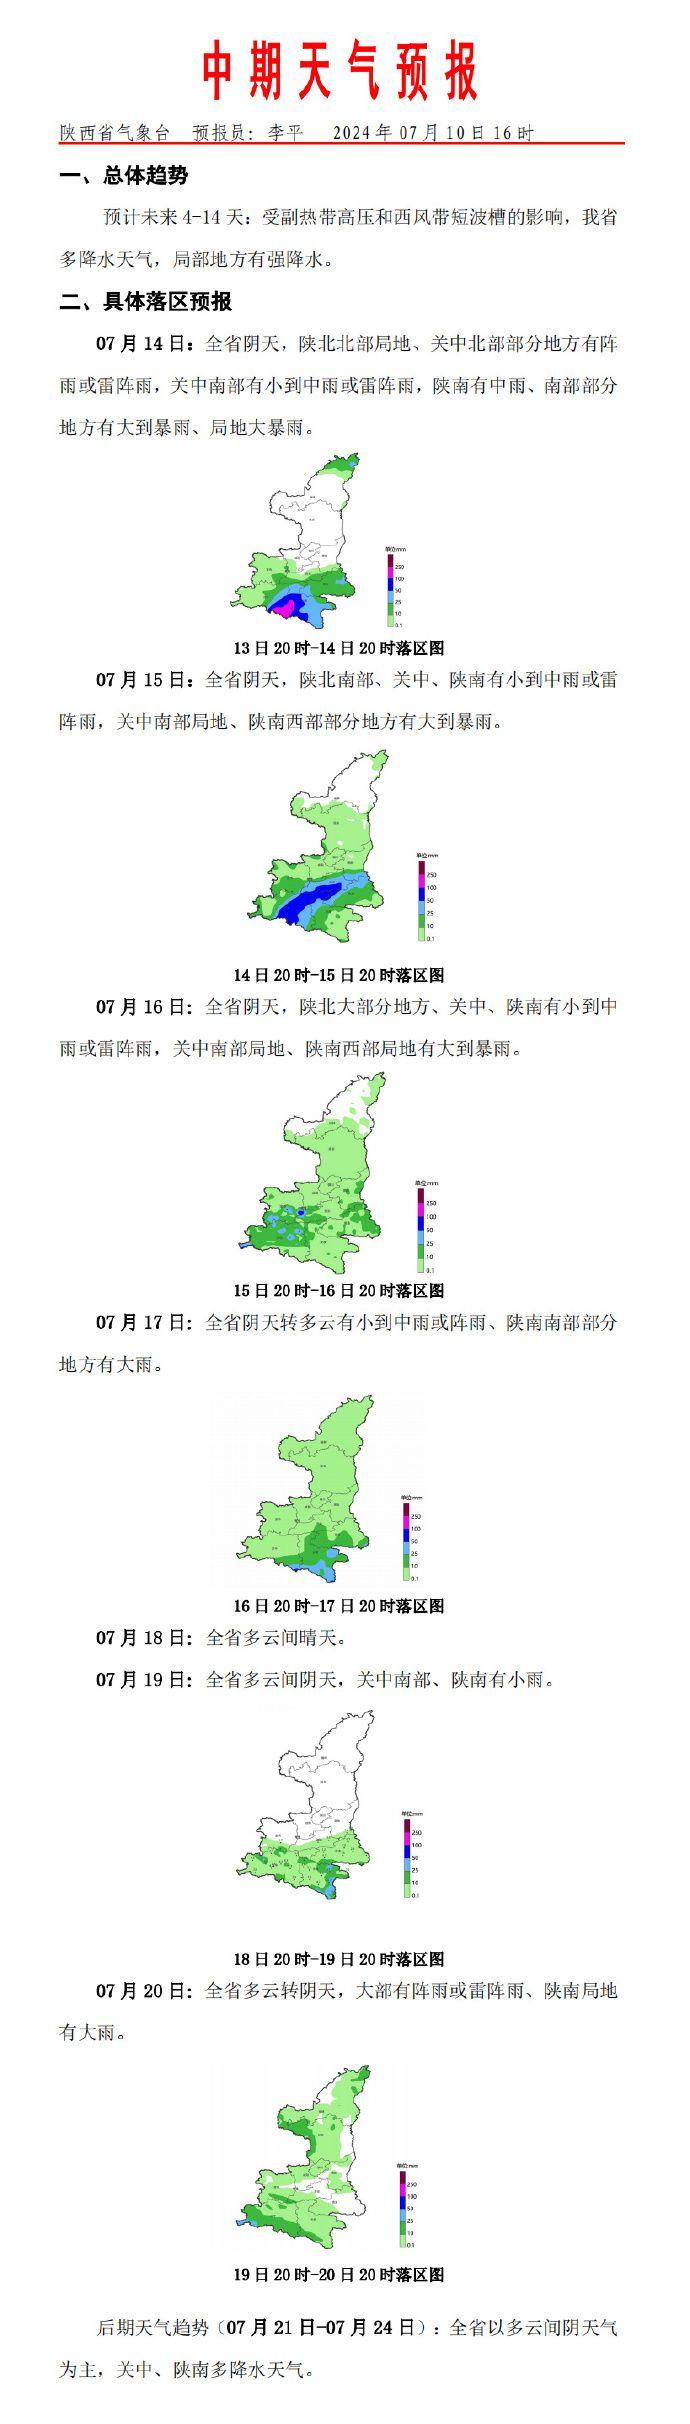 未来4-14天：陕西省多降水天气 局部地方有强降水